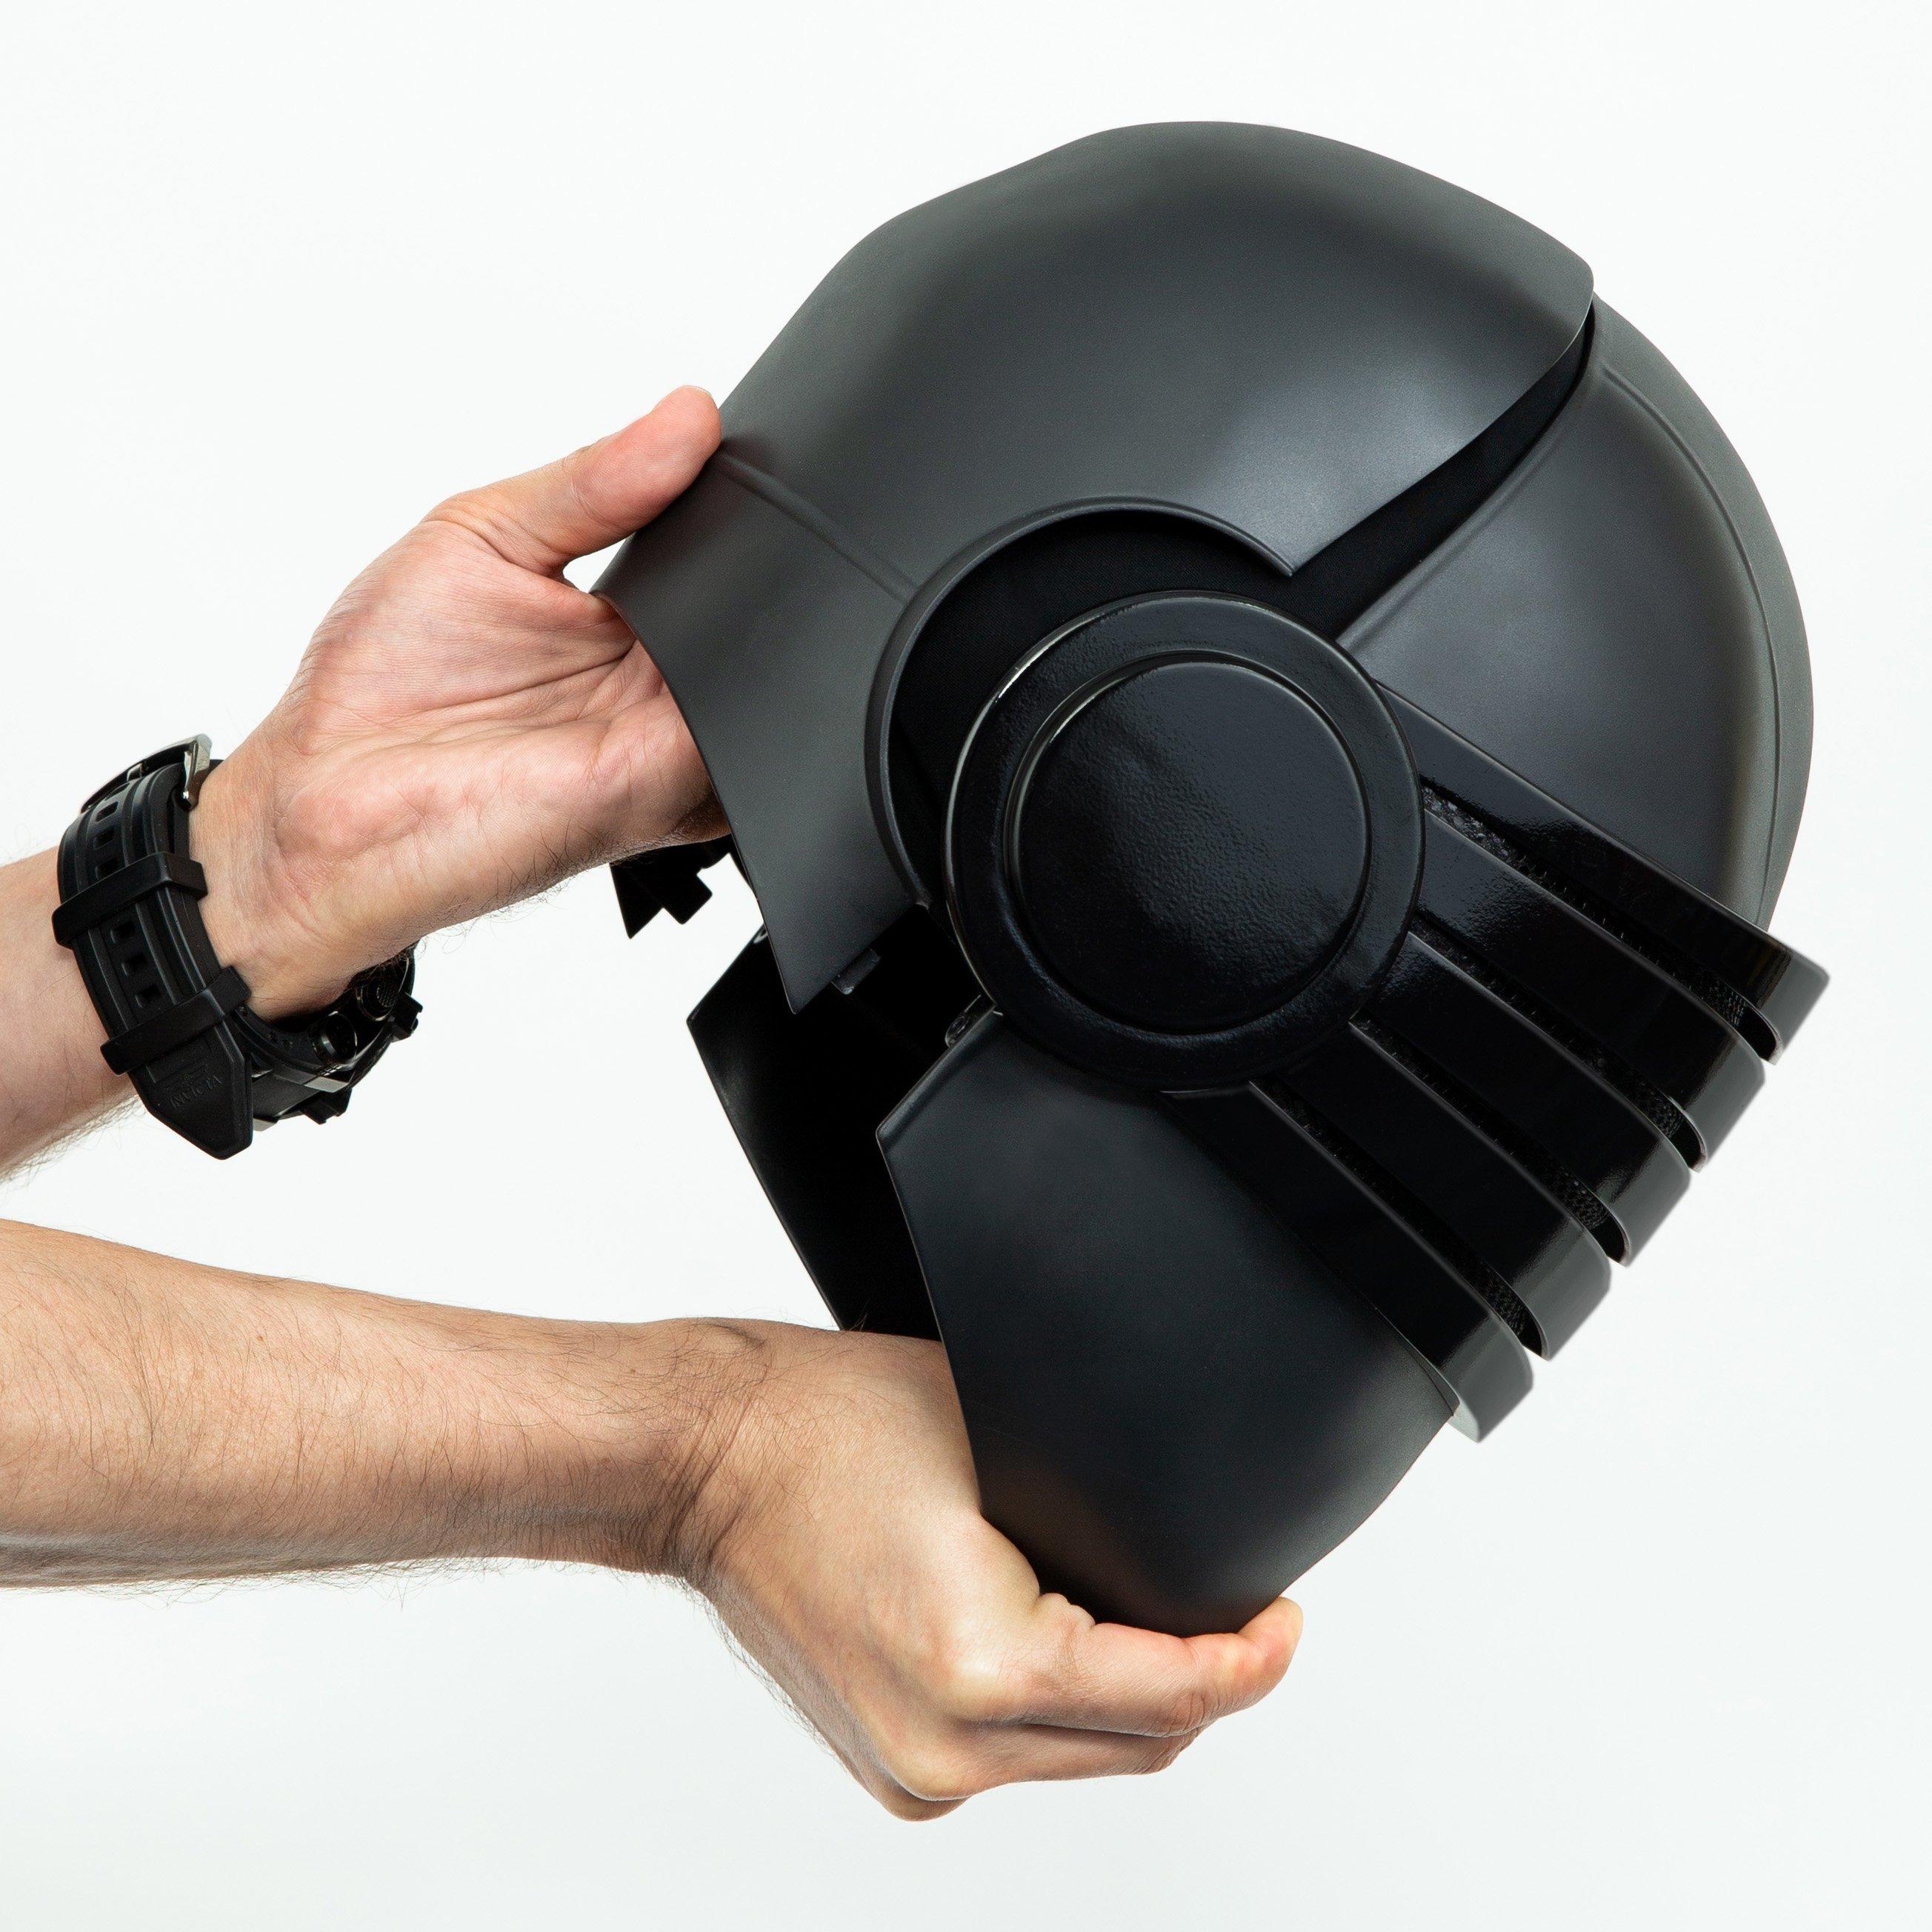 G.I. Joe Snake Eyes Modern Icons Helmet GameStop Exclusive